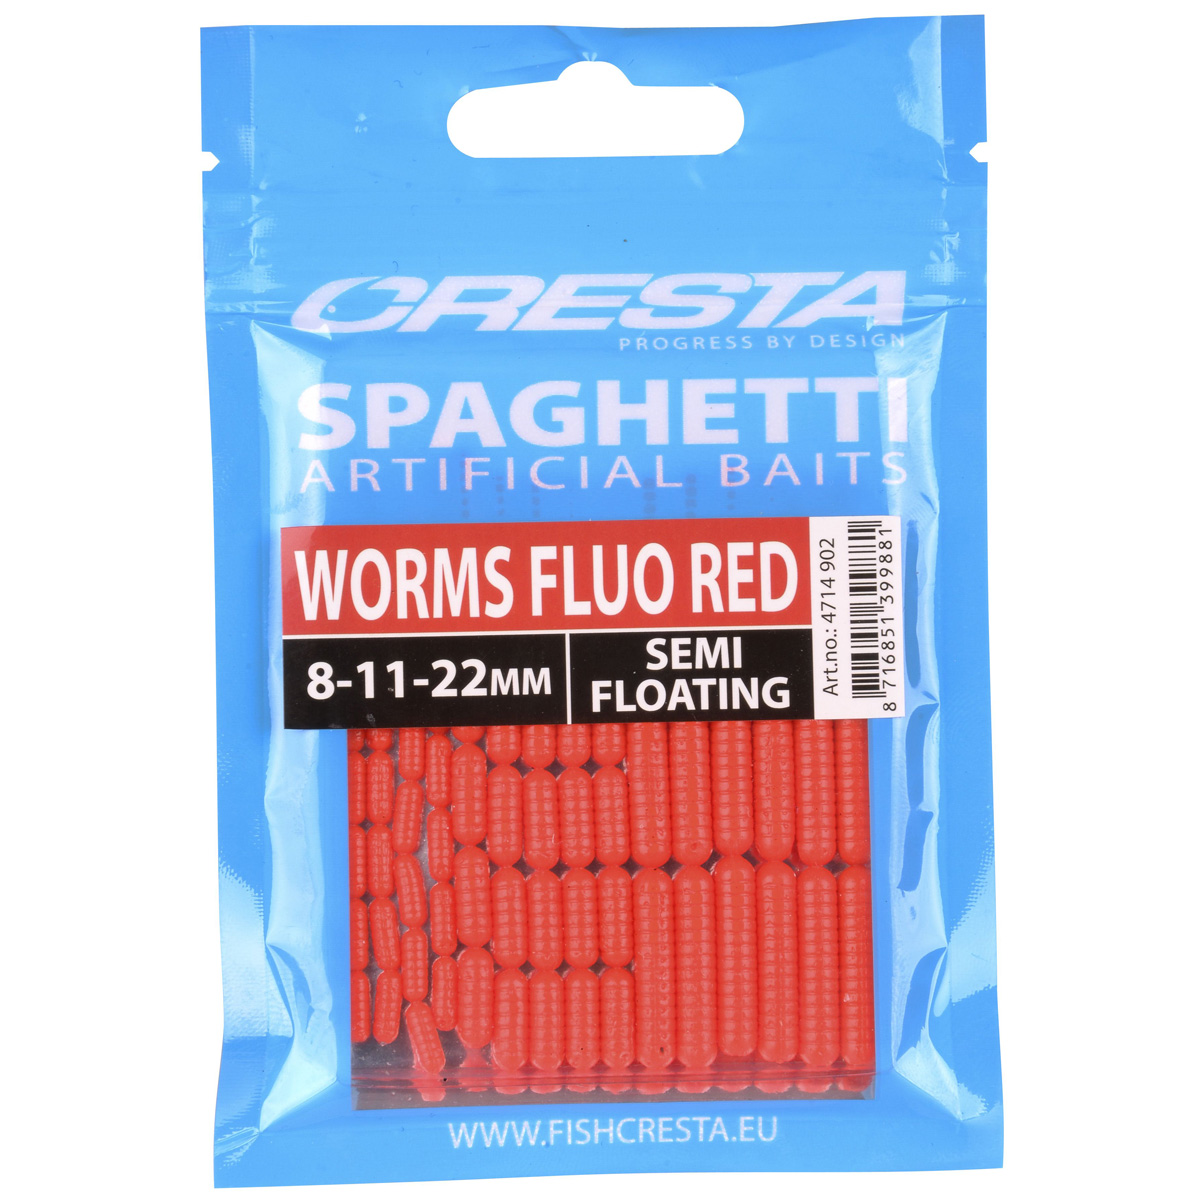 Cresta Spaghetti Worms - Fluo Red